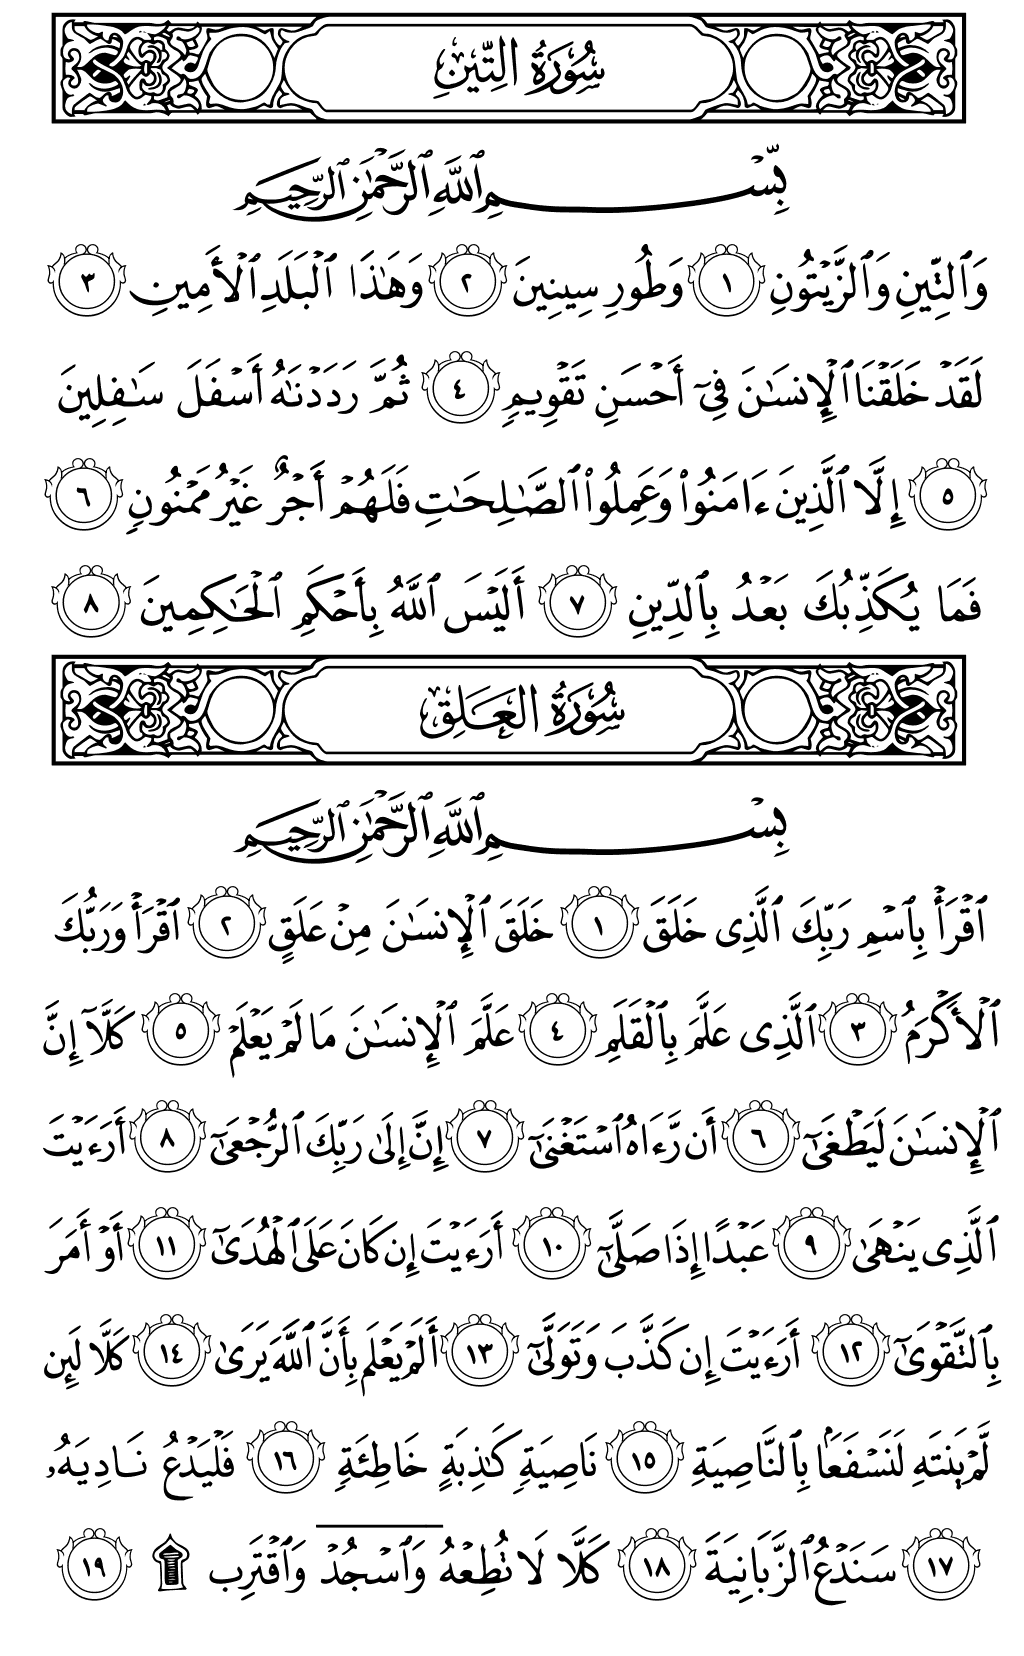 الصفحة رقم 597 من القرآن الكريم